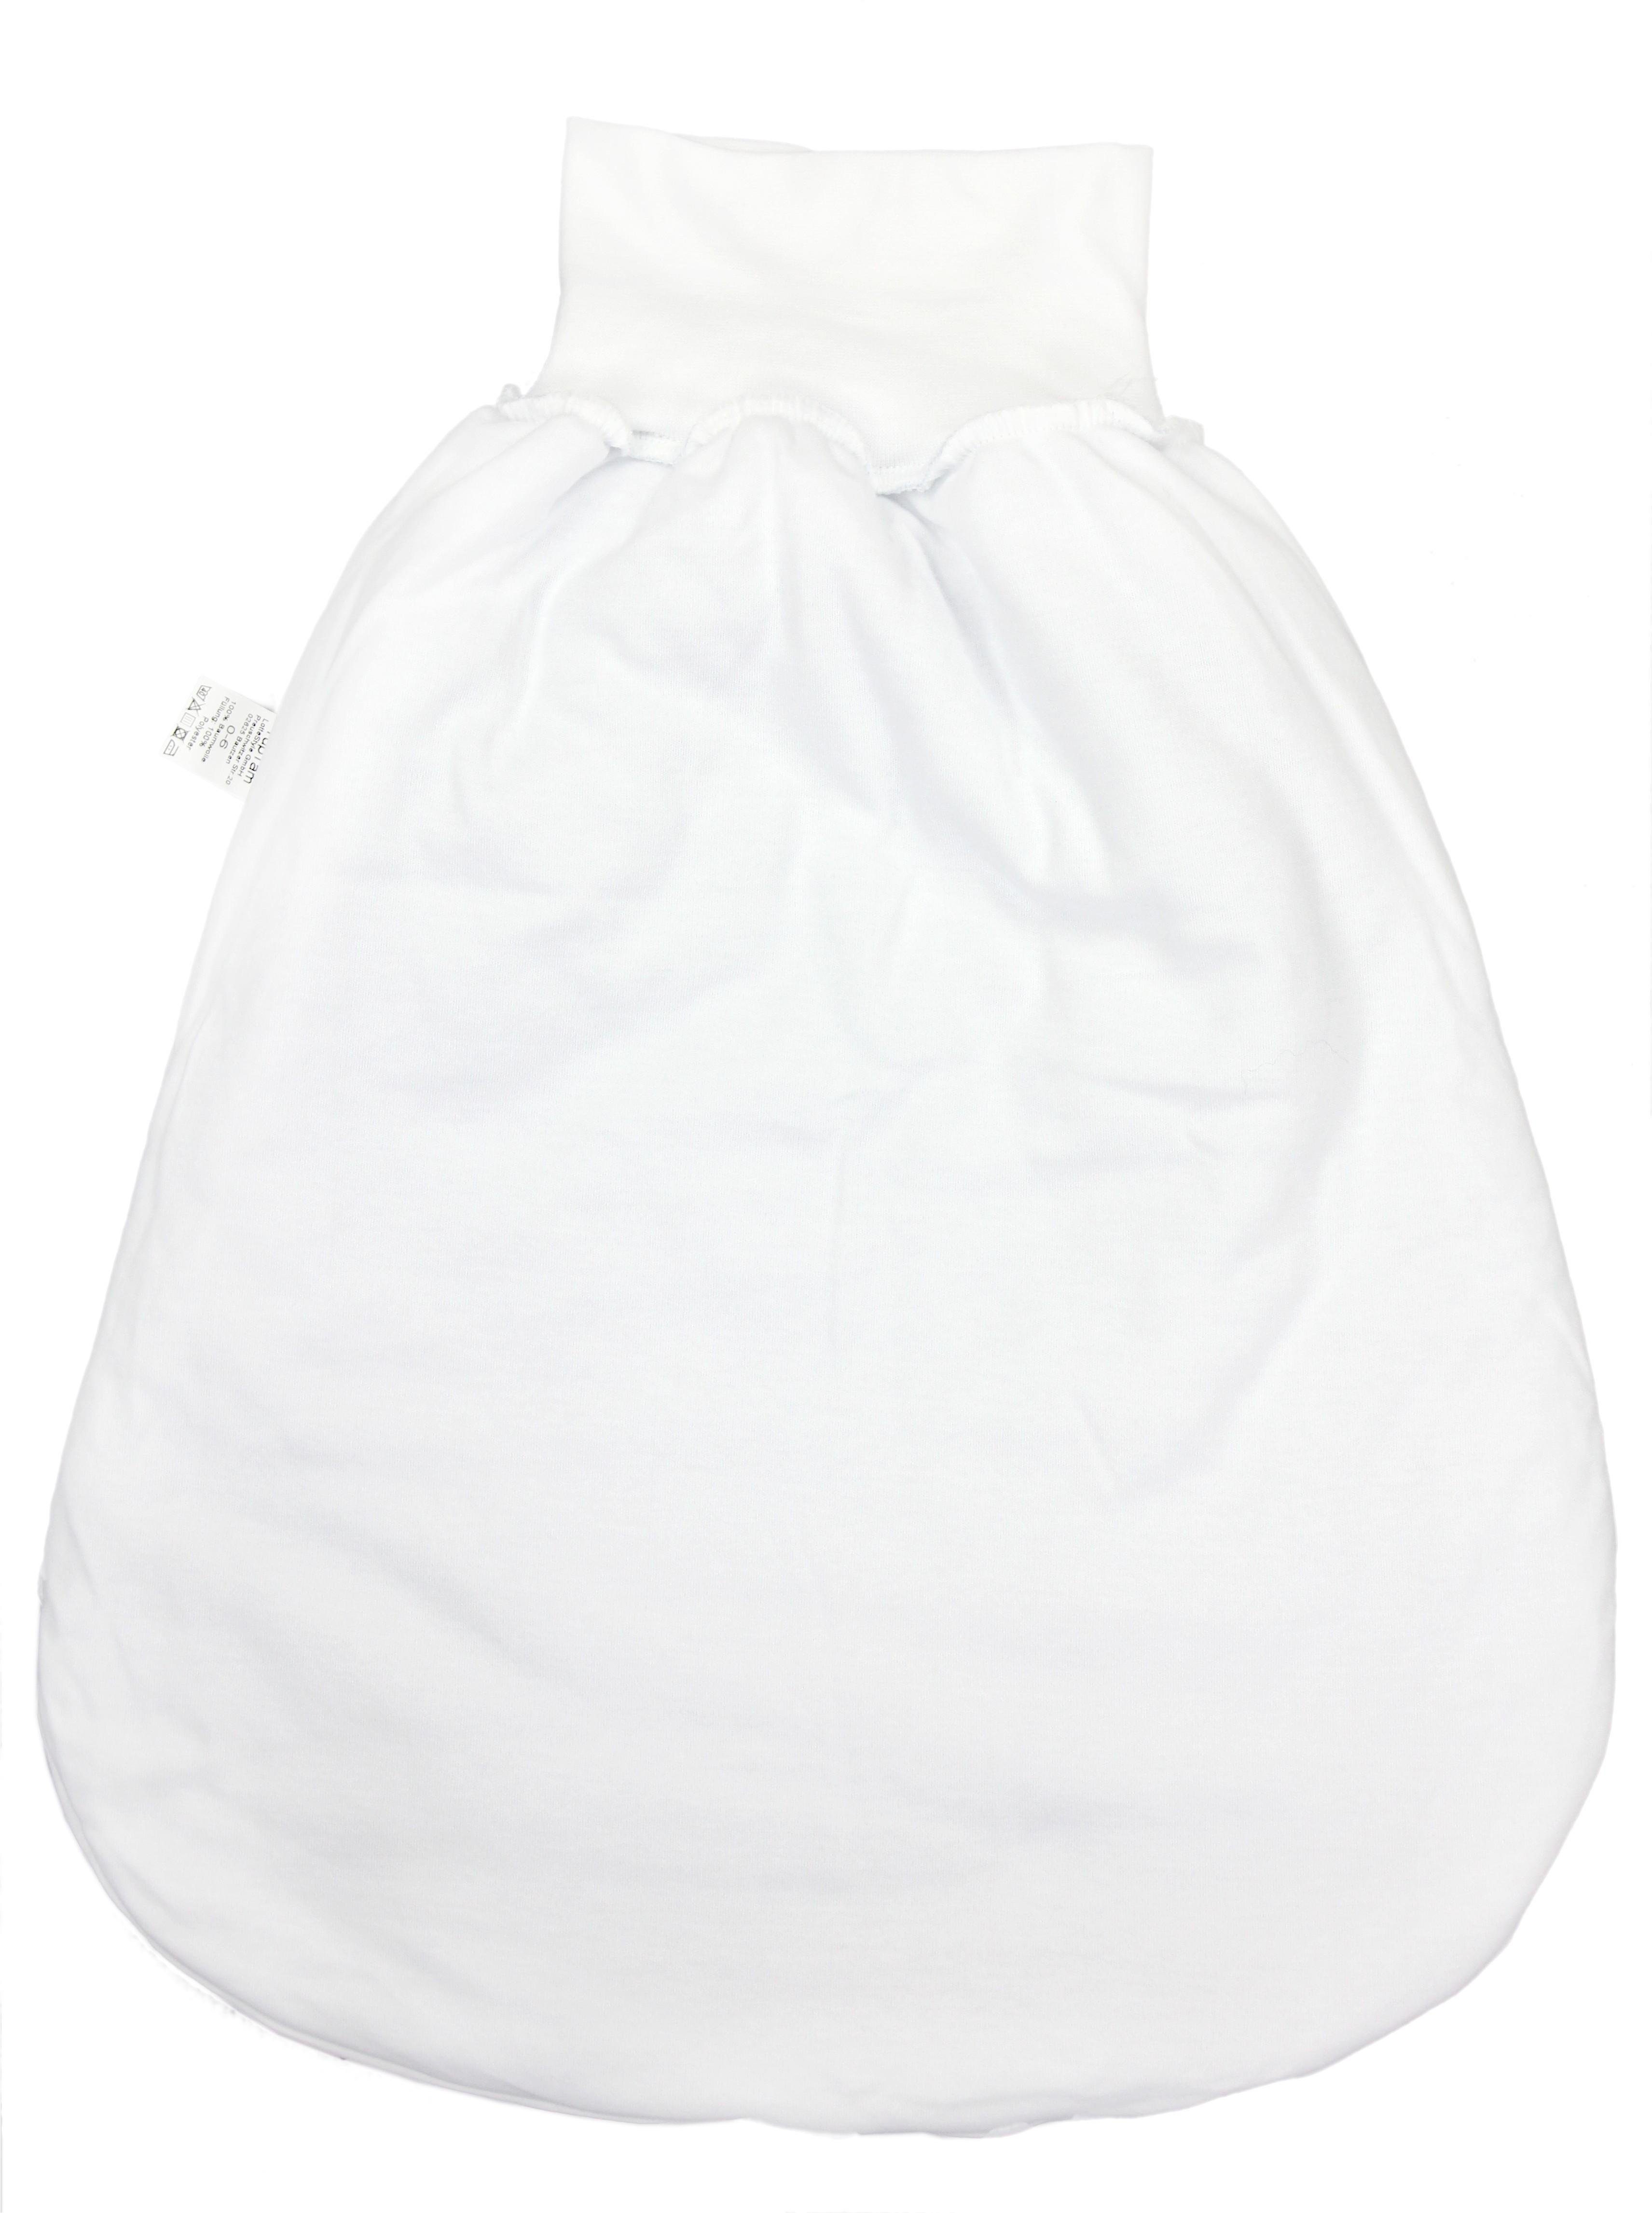 Strampelsack Weiß/Grau breitem Wattiert Sternchen Babyschlafsack mit Bund Baby Unisex TupTam TupTam